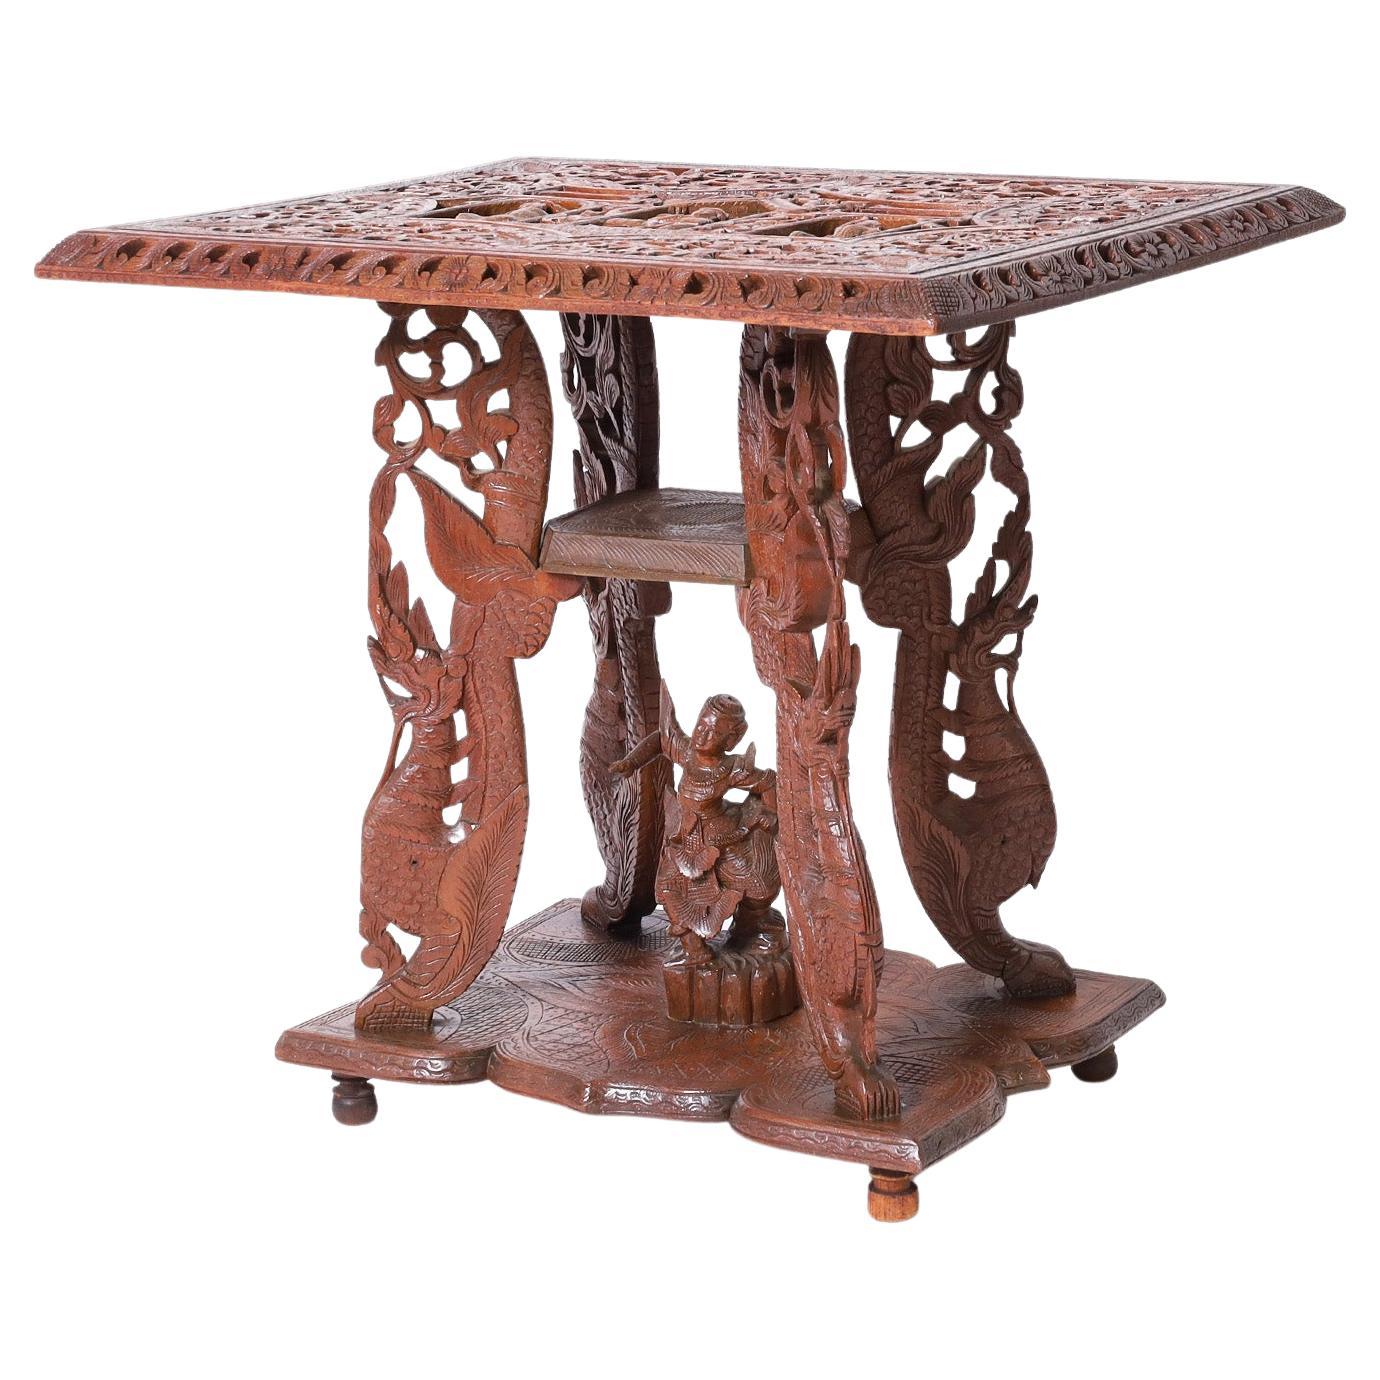 Anglo Indian geschnitzt Wood Stand oder Tisch